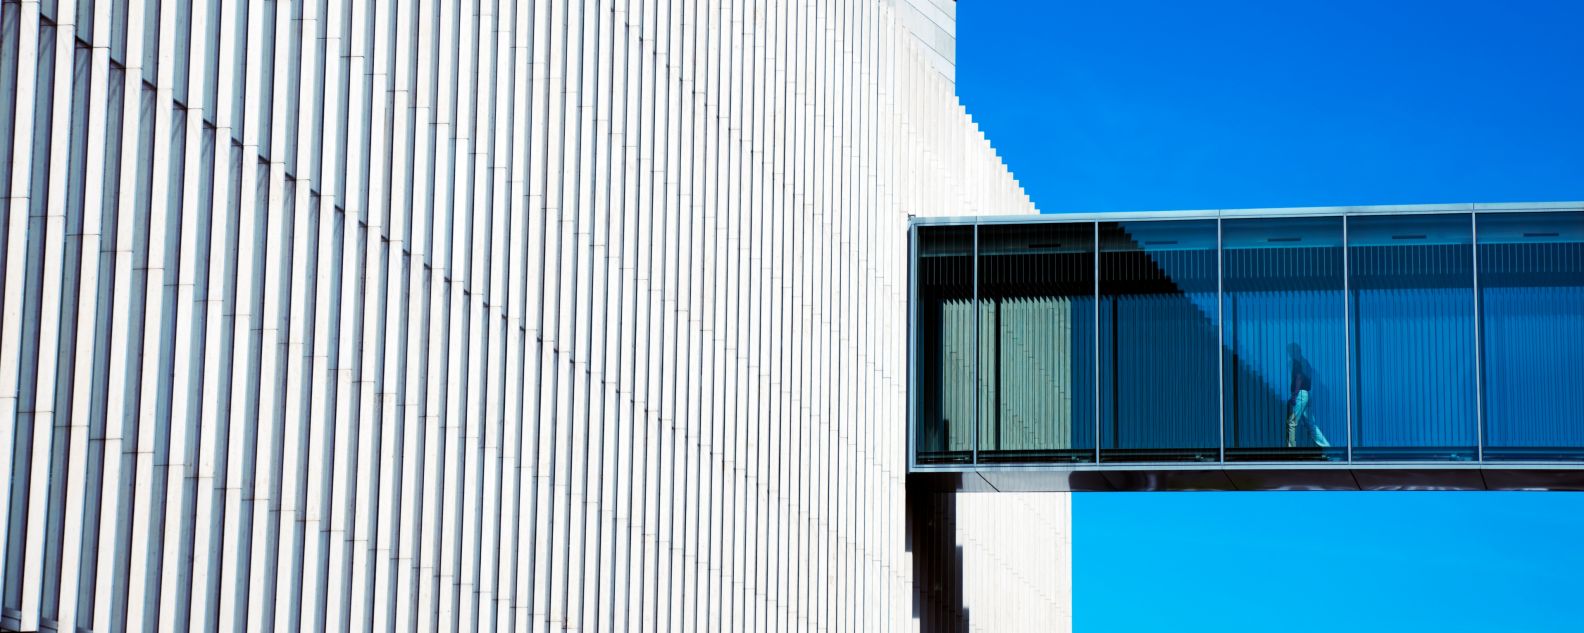 Eine Person schlendert durch den Skywalk eines modernen Gebäudes